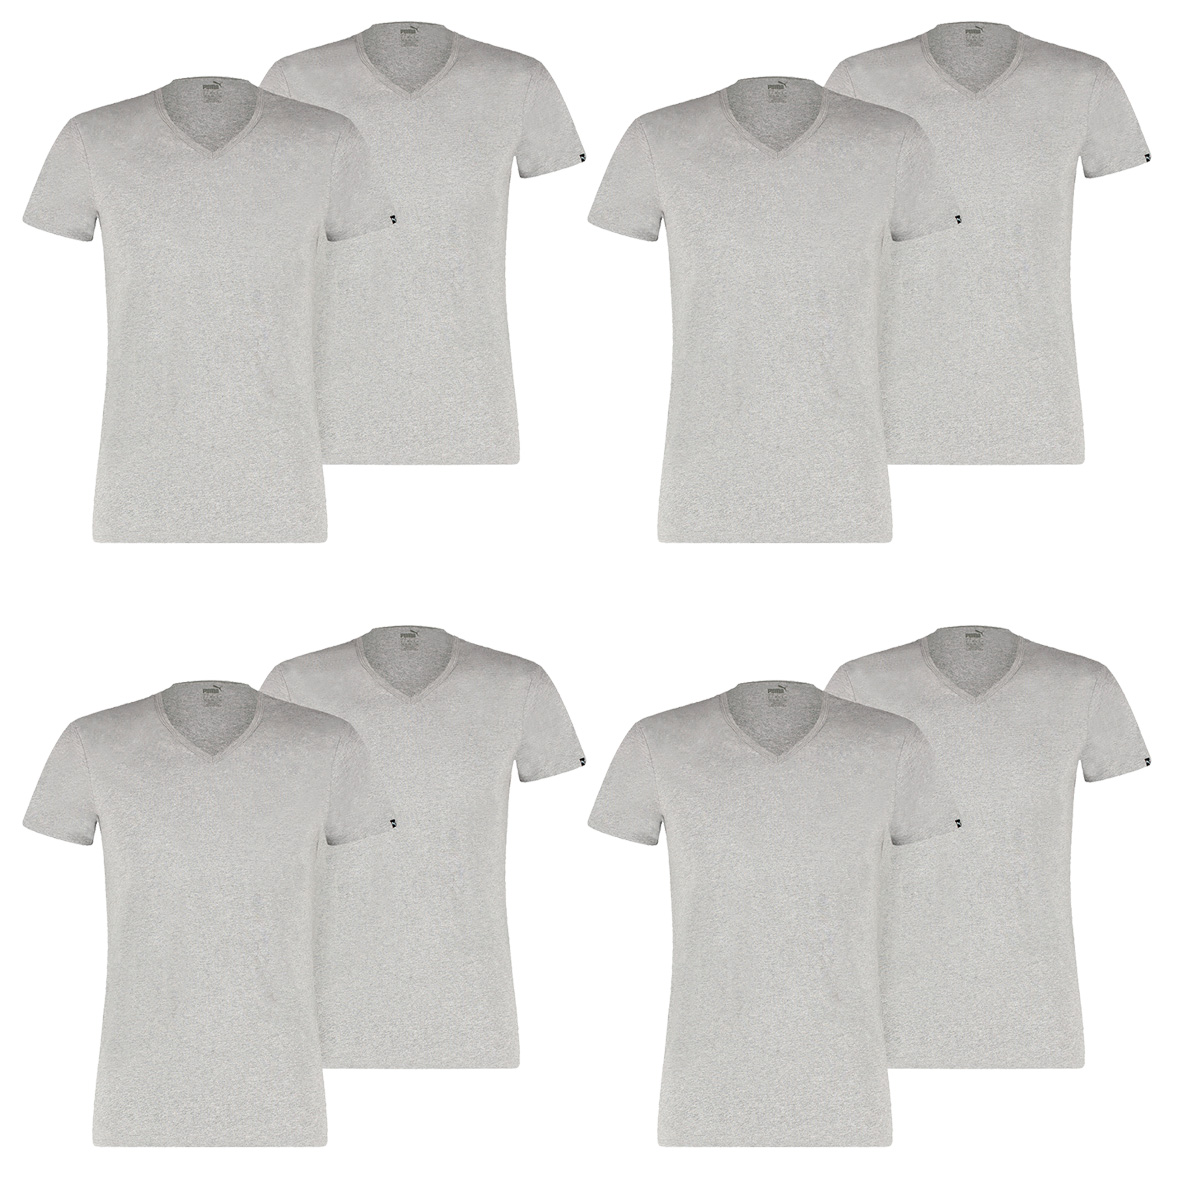 8 er Pack Puma Basic V Neck T-Shirt Men Herren Unterhemd V-Ausschnitt